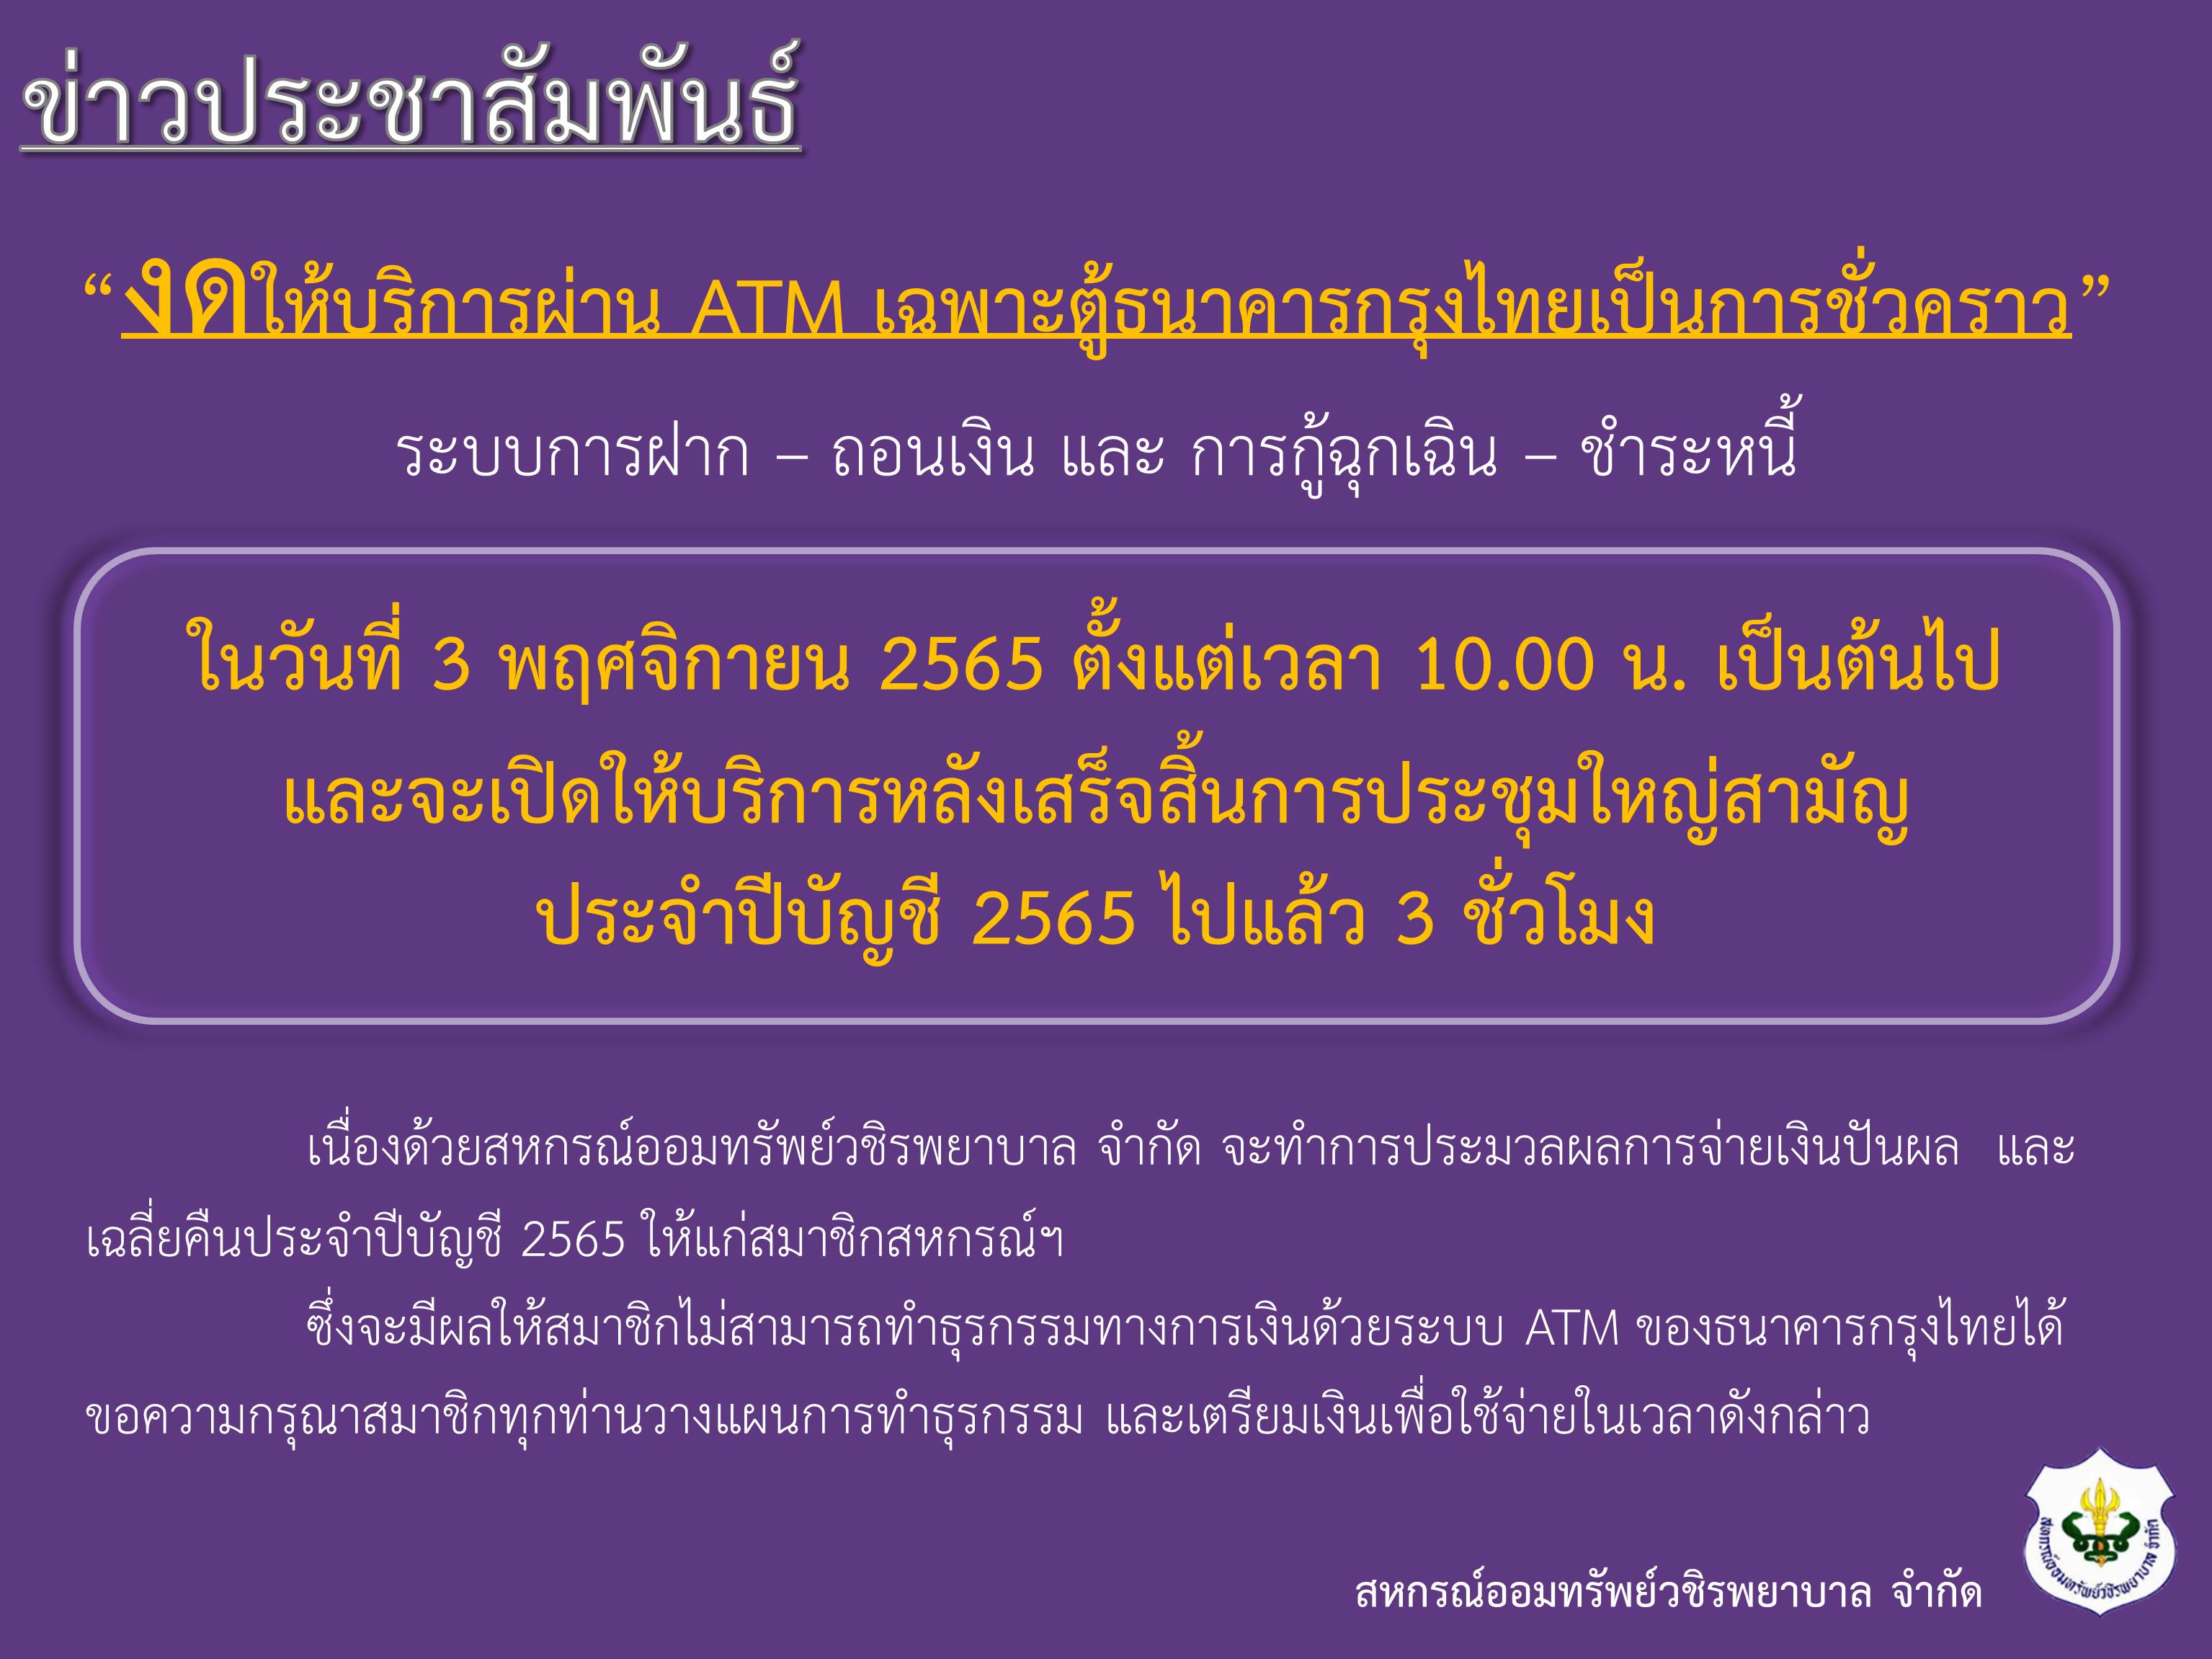 ขอแจ้งงดให้บริการระบบ ATM เป็นการชั่วคราว ในวันประชุมใหญ่สามัญประจำปีบัญชี 2565